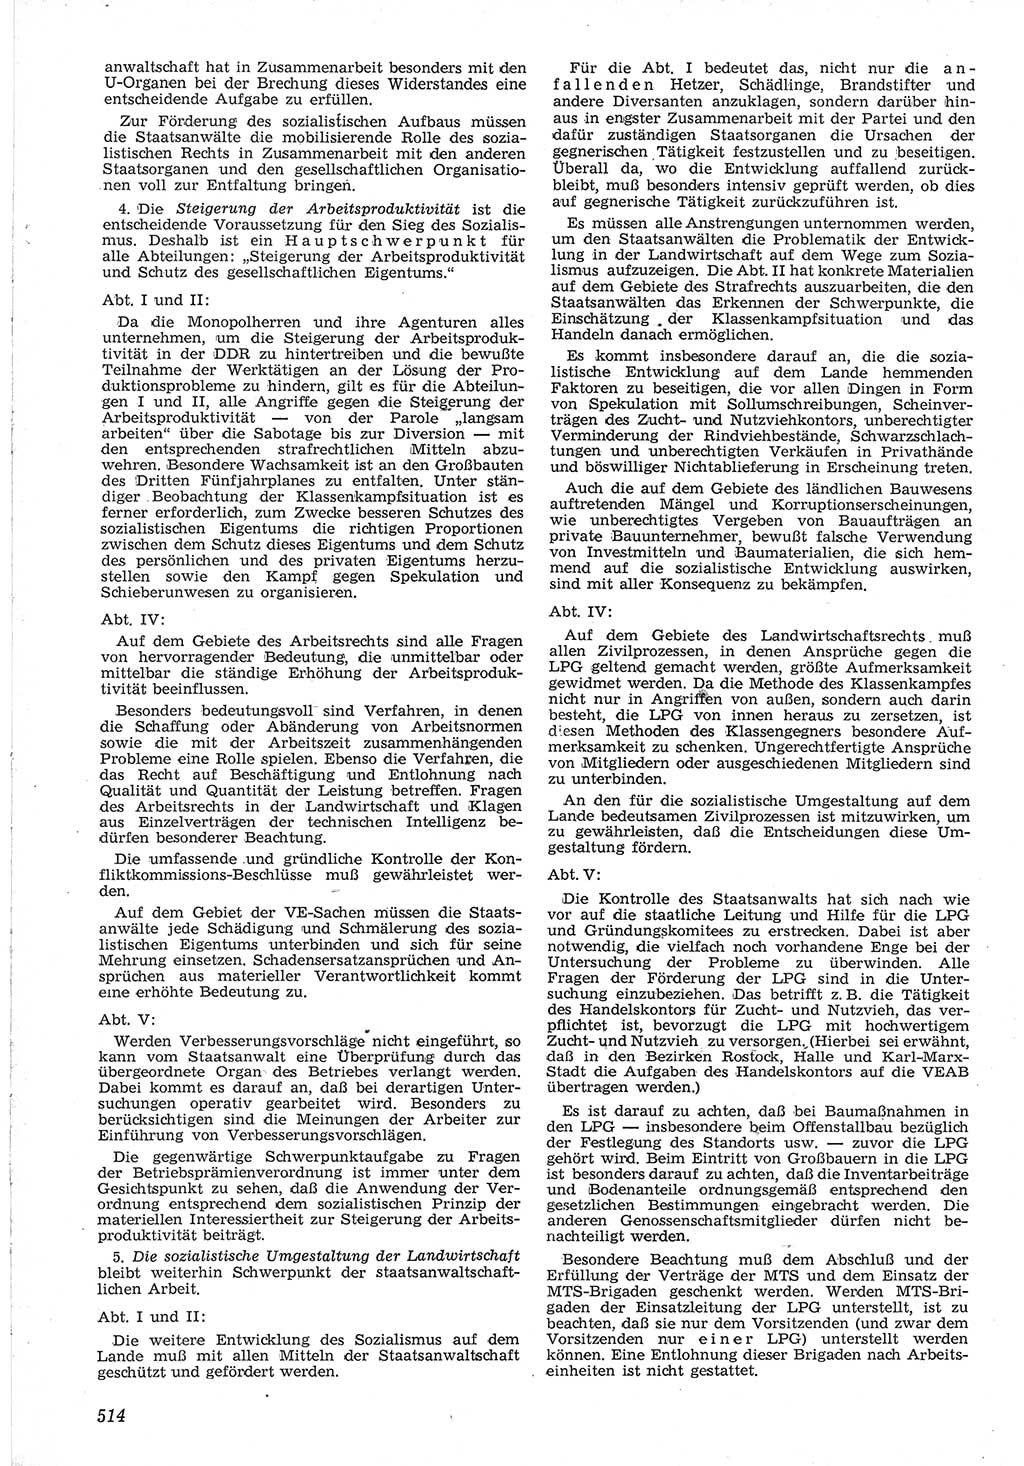 Neue Justiz (NJ), Zeitschrift für Recht und Rechtswissenschaft [Deutsche Demokratische Republik (DDR)], 12. Jahrgang 1958, Seite 514 (NJ DDR 1958, S. 514)